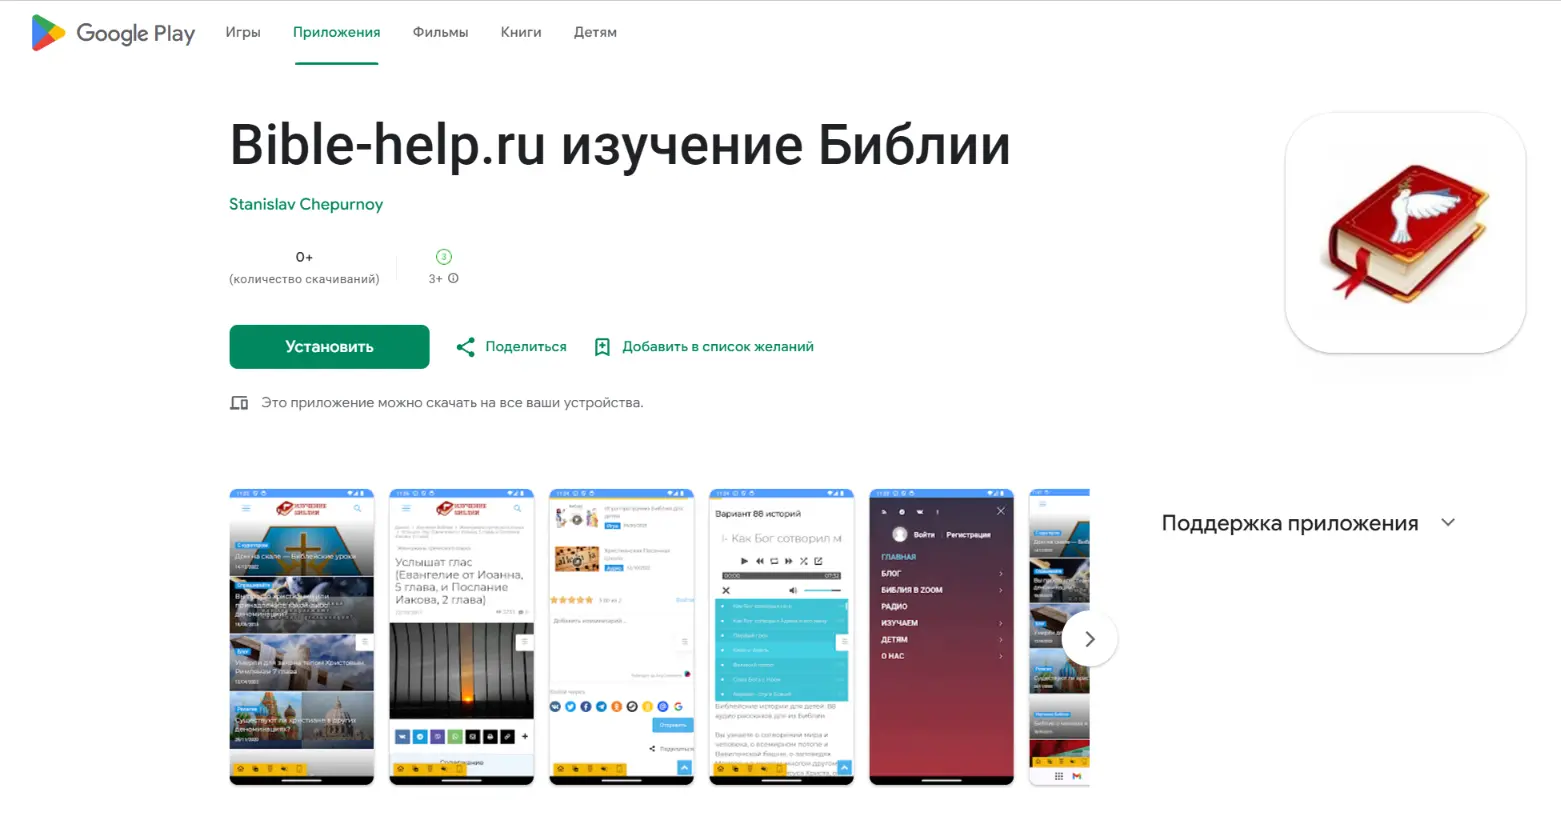 Изучение Библии (Bible-help.ru) в Google Play